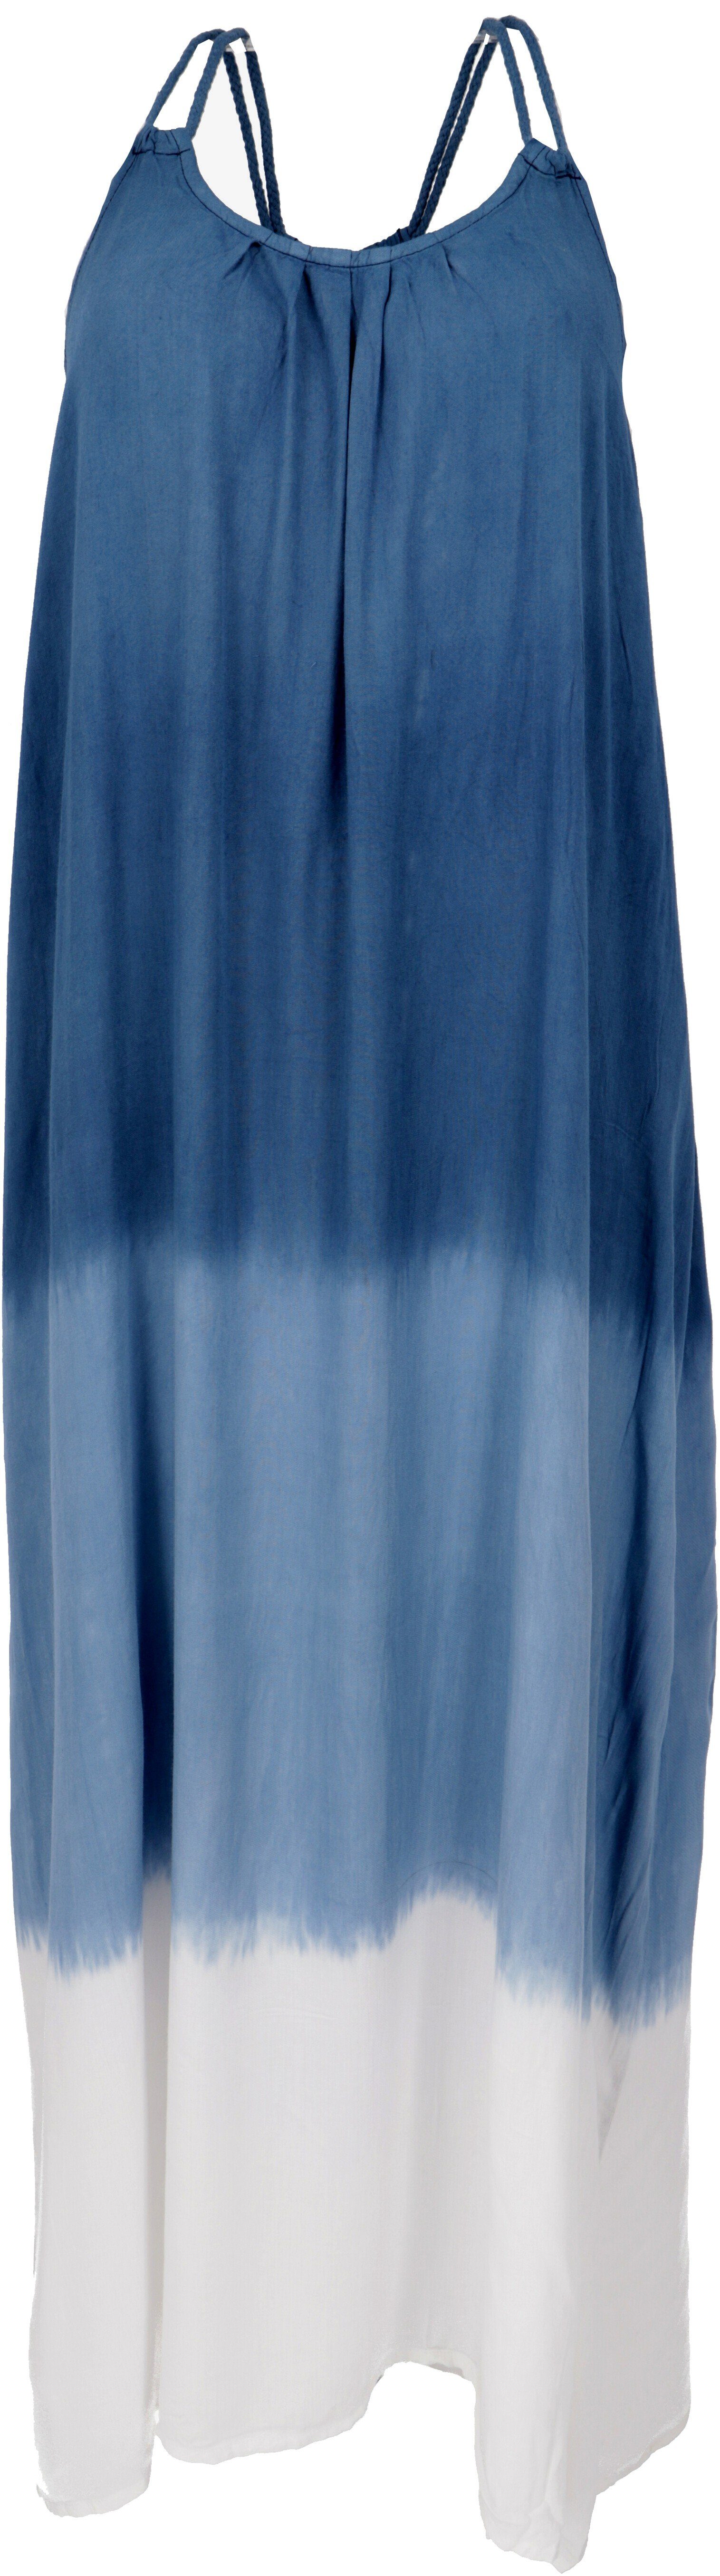 Guru-Shop Midikleid Schmales Batikkleid, Strandkleid, Sommerkleid -.. alternative Bekleidung blau/weiß